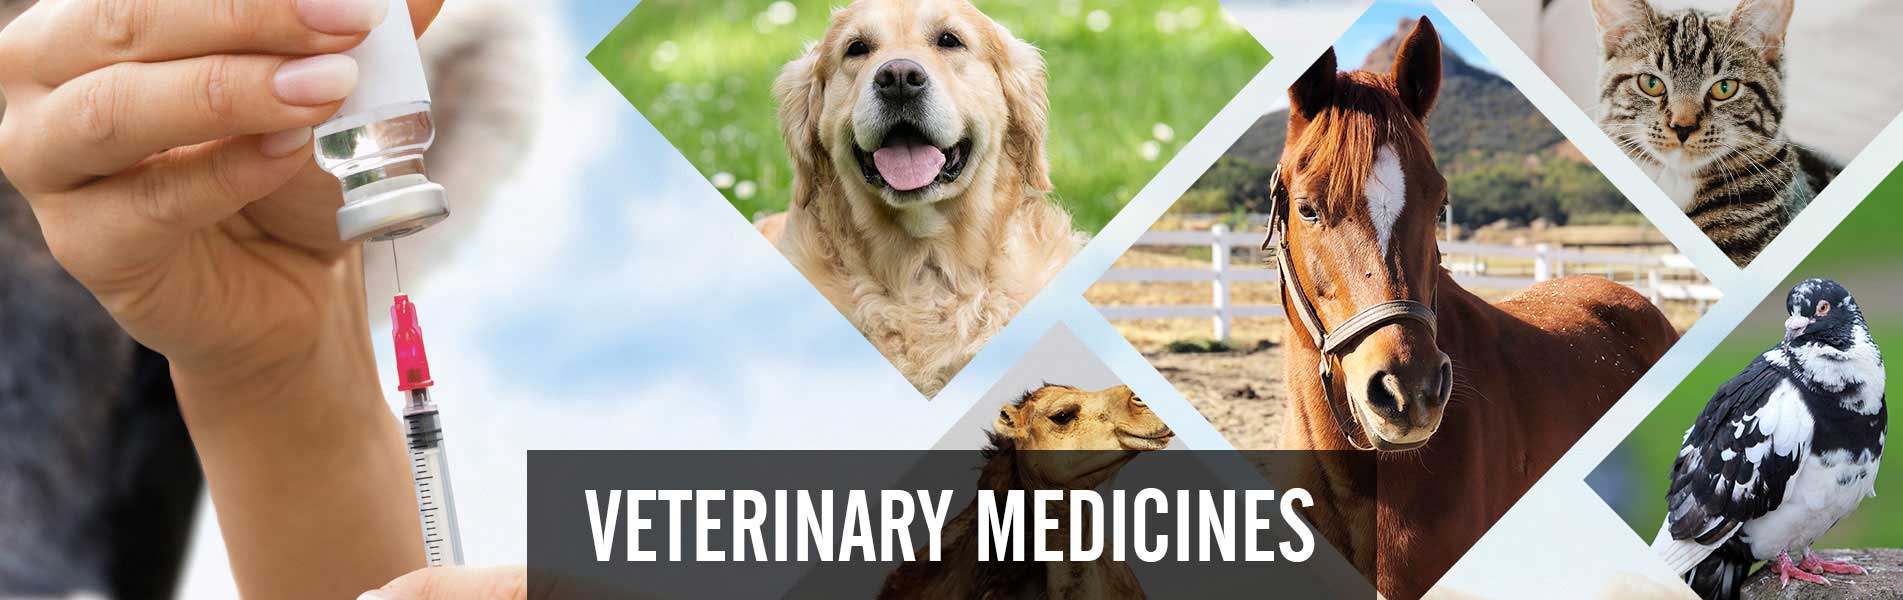 Veterinary-Medicines